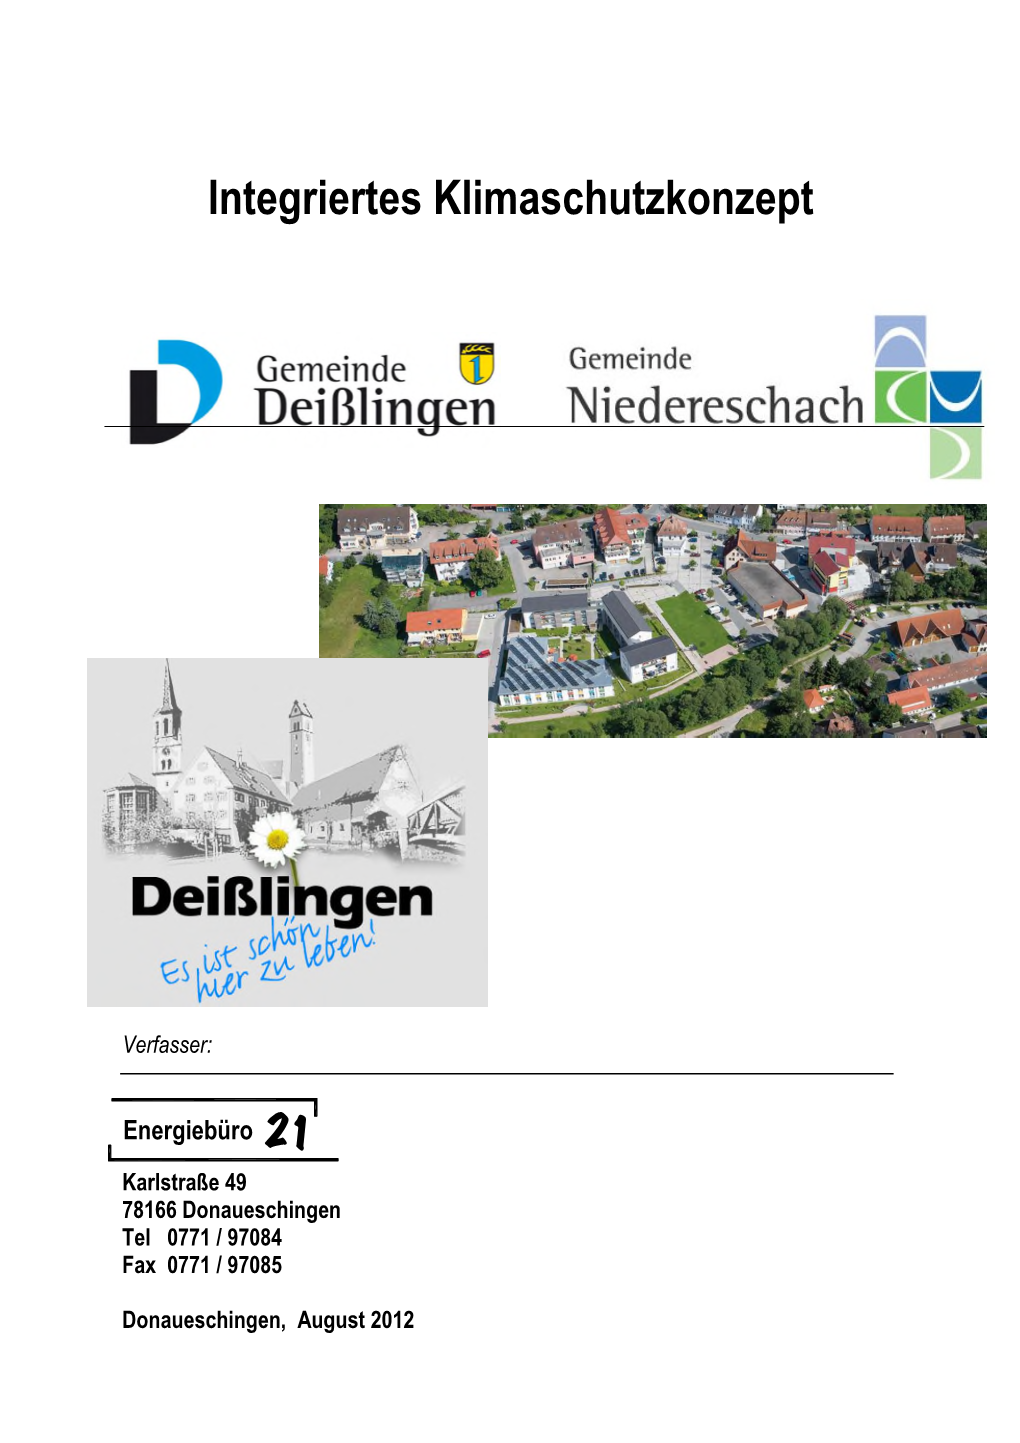 Integriertes Klimaschutzkonzept Deißlingen/Niedereschach